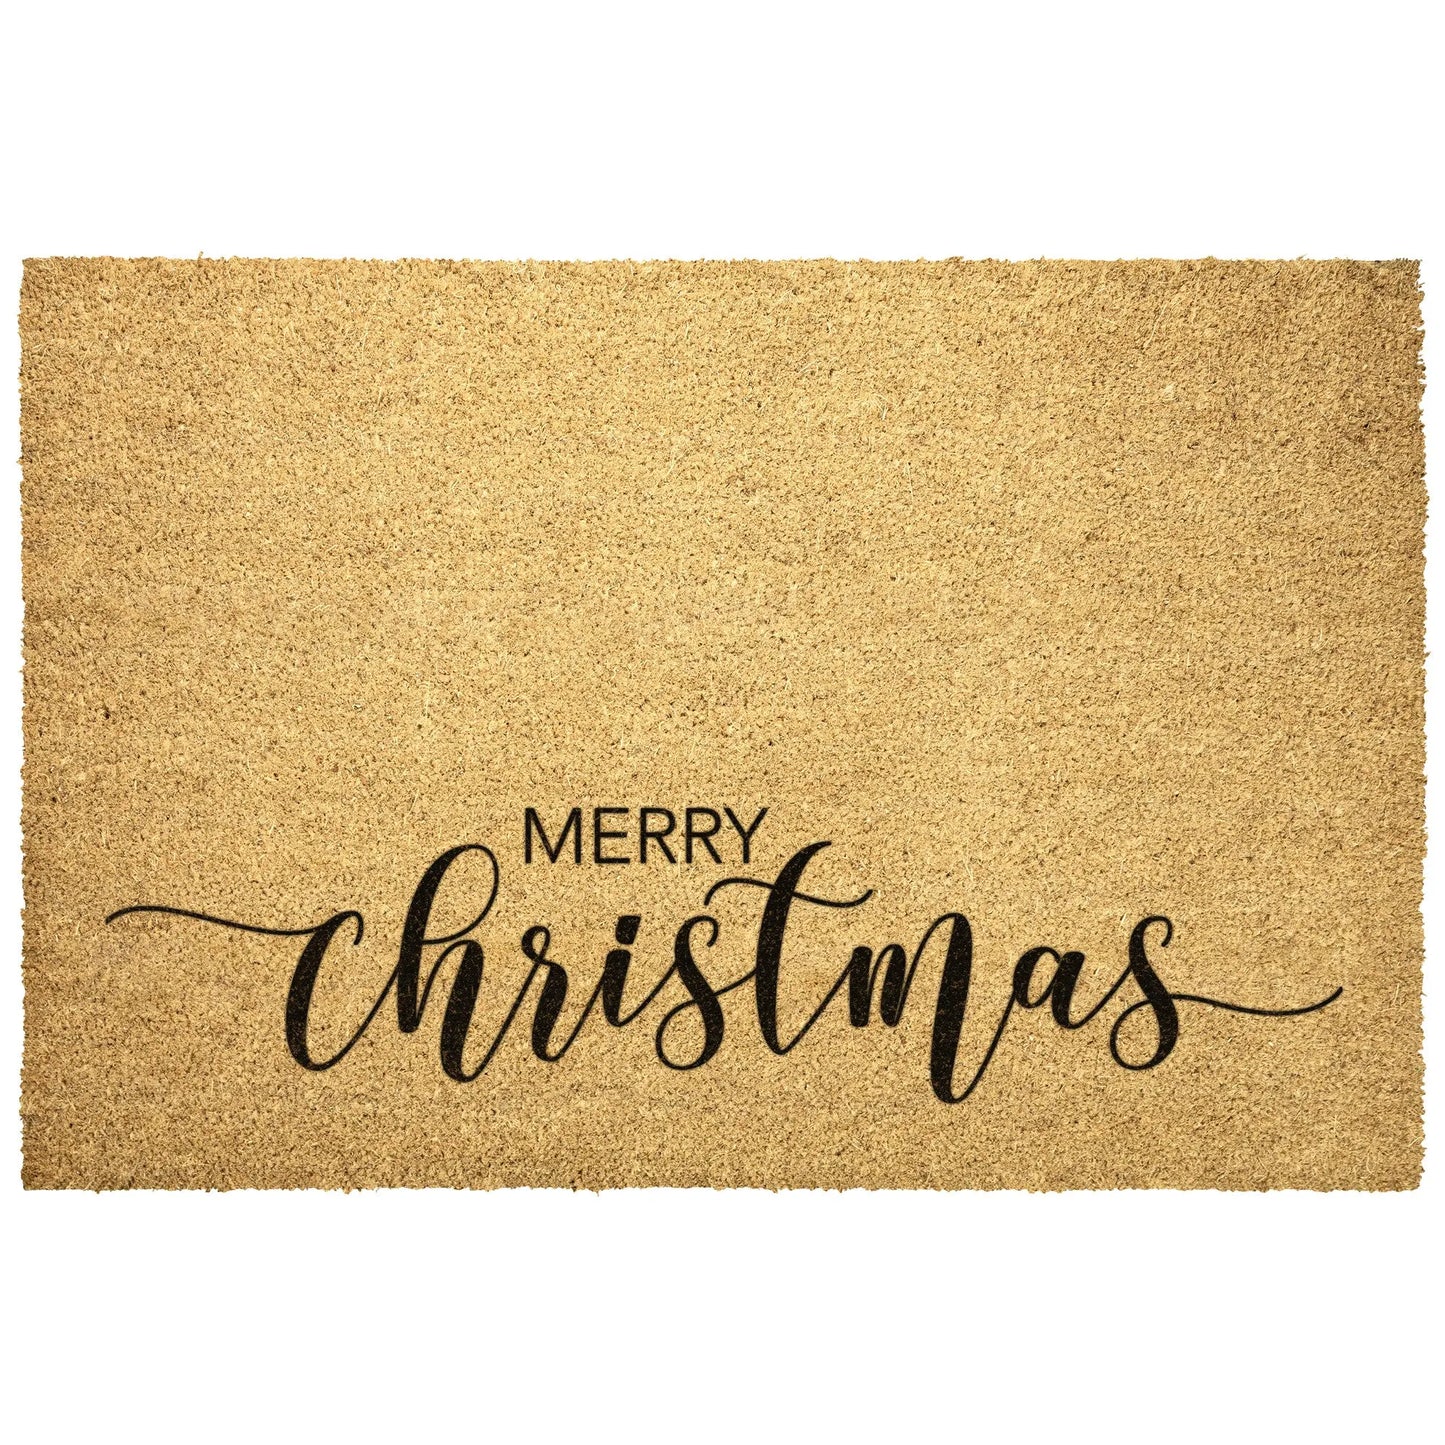 Merry Christmas Coir Doormat teelaunch